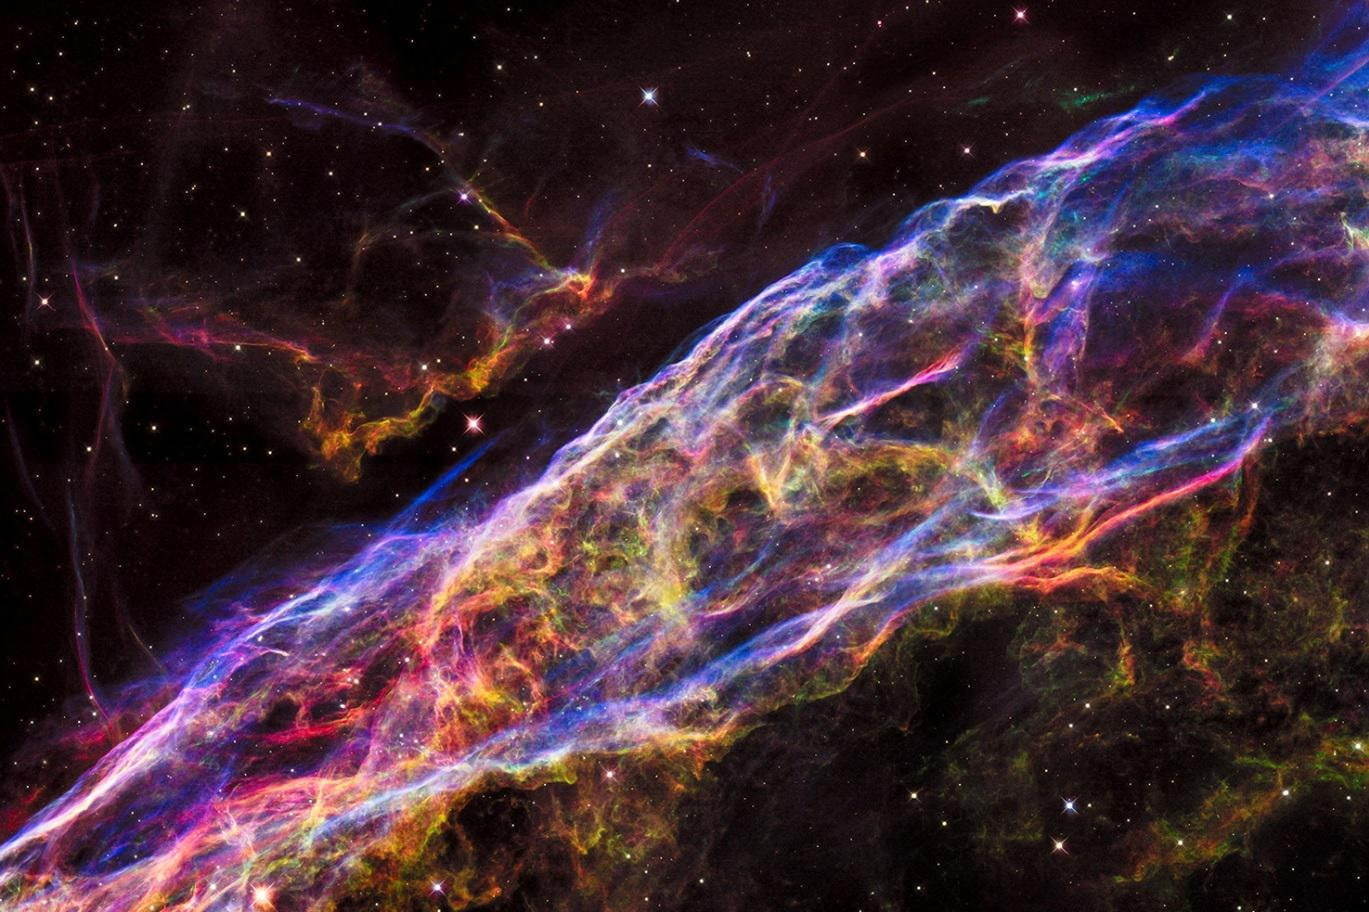 超新星爆発の残骸 網状星雲の一部のクローズアップ
ハッブル宇宙望遠鏡による観測
NASA, ESA, and the Hubble Heritage Team (STScI/AURA)